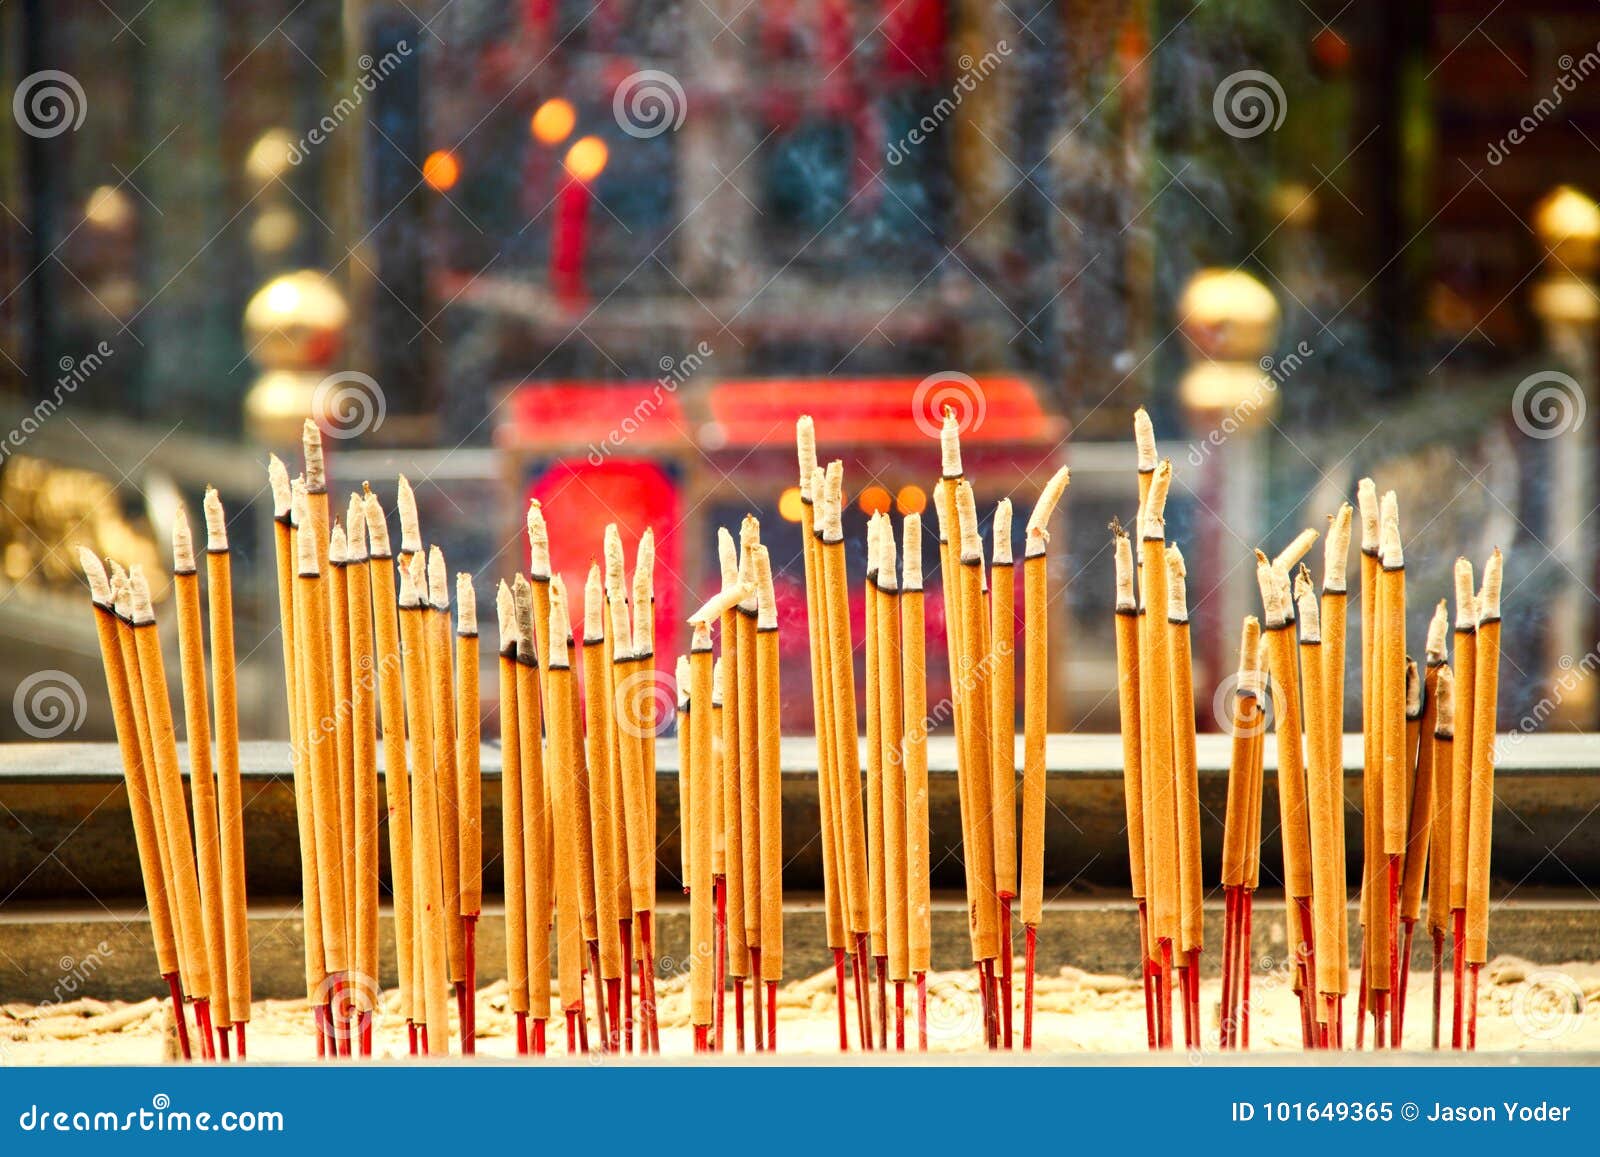 中国著名5大佛教名山，各个祈福灵验，香火极为旺盛|雪窦山|肉身|名山_新浪新闻